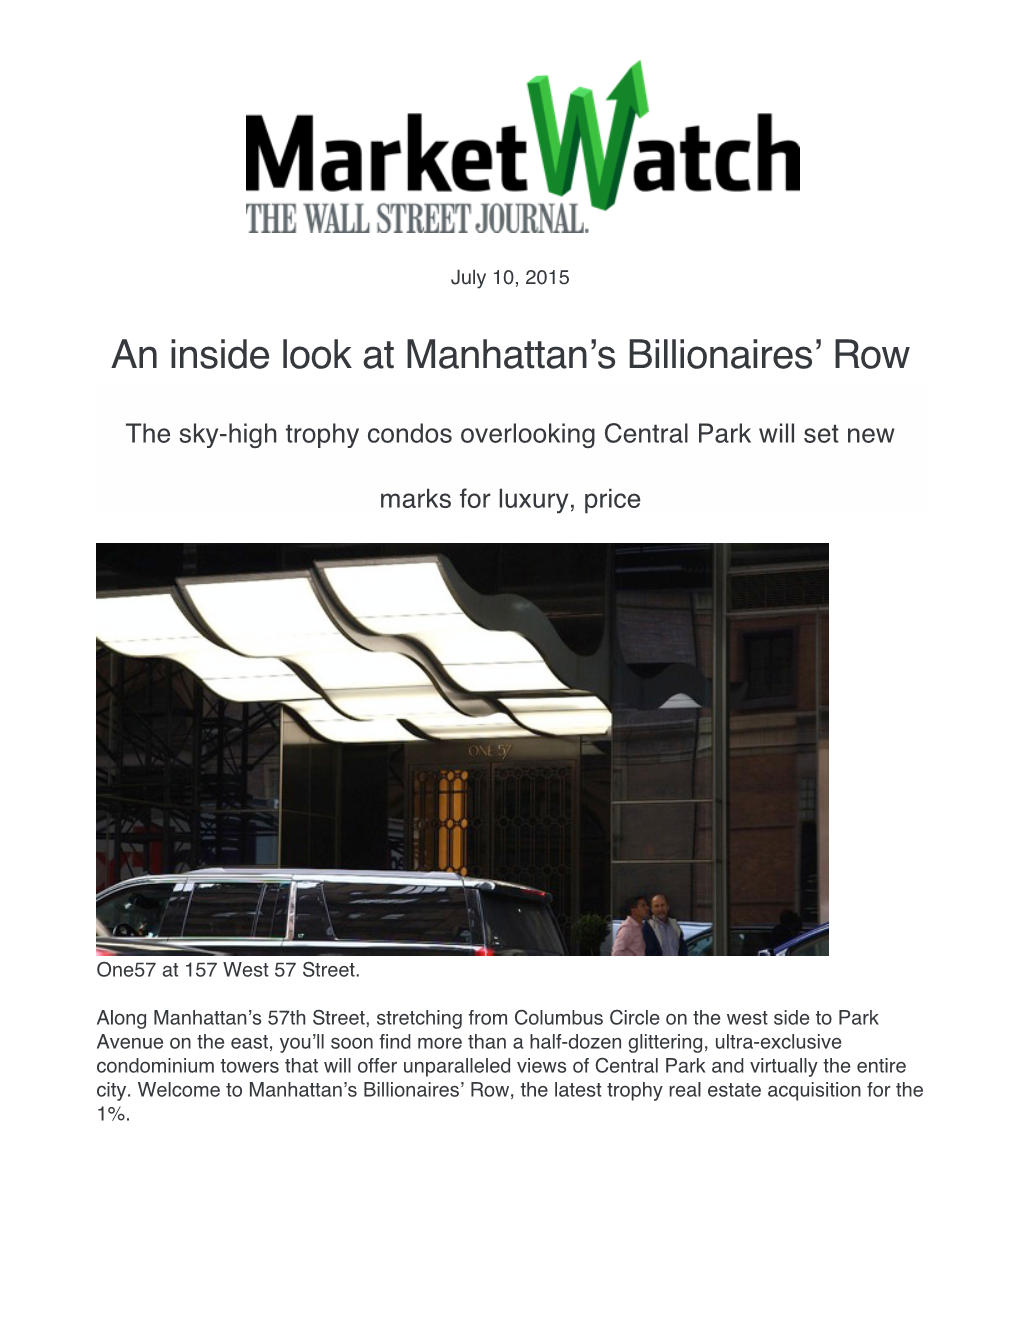 An Inside Look at Manhattan's Billionaires'